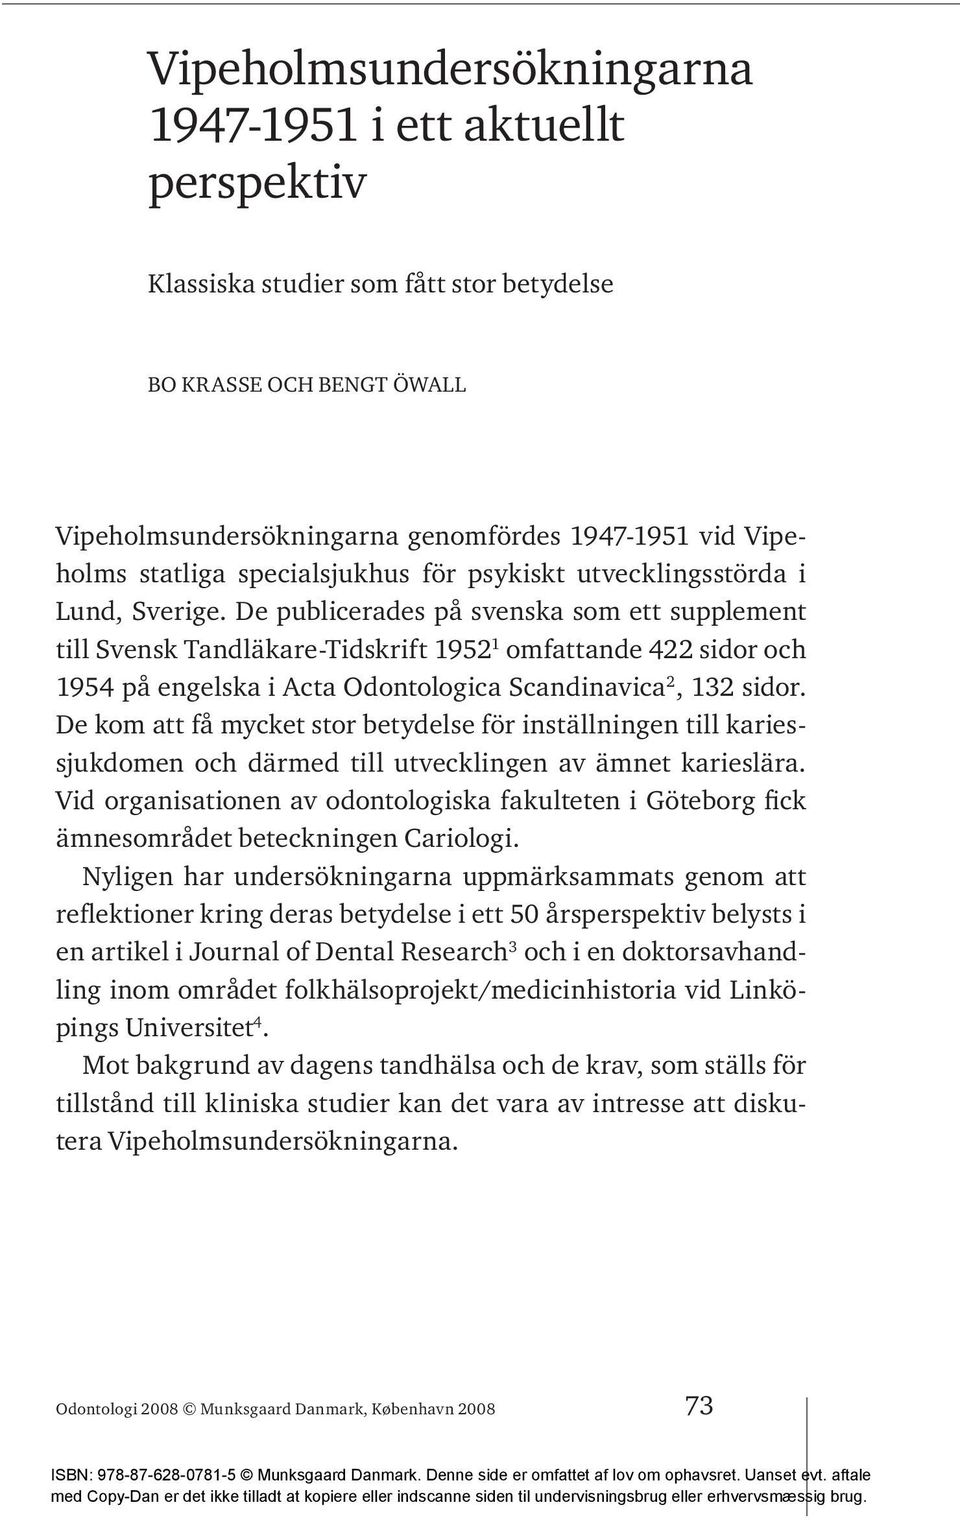 De publicerades på svenska som ett supplement till Svensk Tandläkare-Tidskrift 1952 1 omfattande 422 sidor och 1954 på engelska i Acta Odontologica Scandinavica 2, 132 sidor.